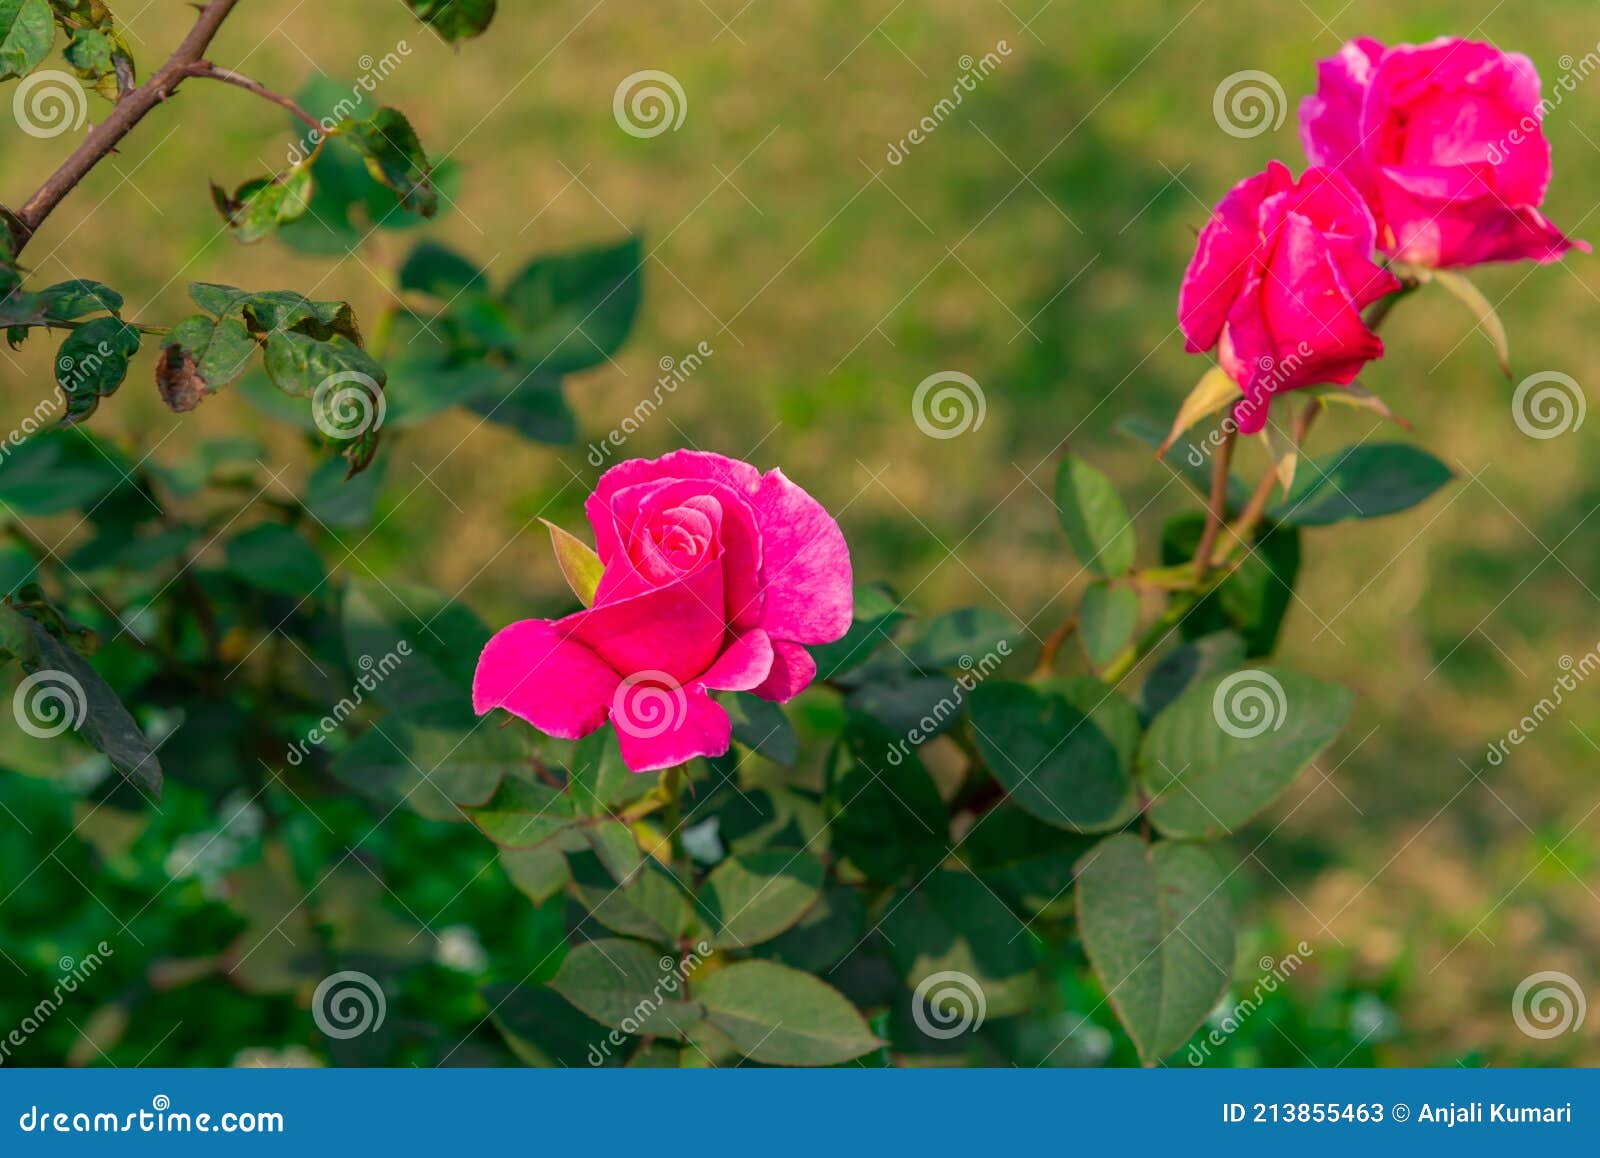 Flor Vermelha De Rosa No Jardim Rosa De Delhi Imagem de Stock - Imagem de  daylight, delicado: 213855463